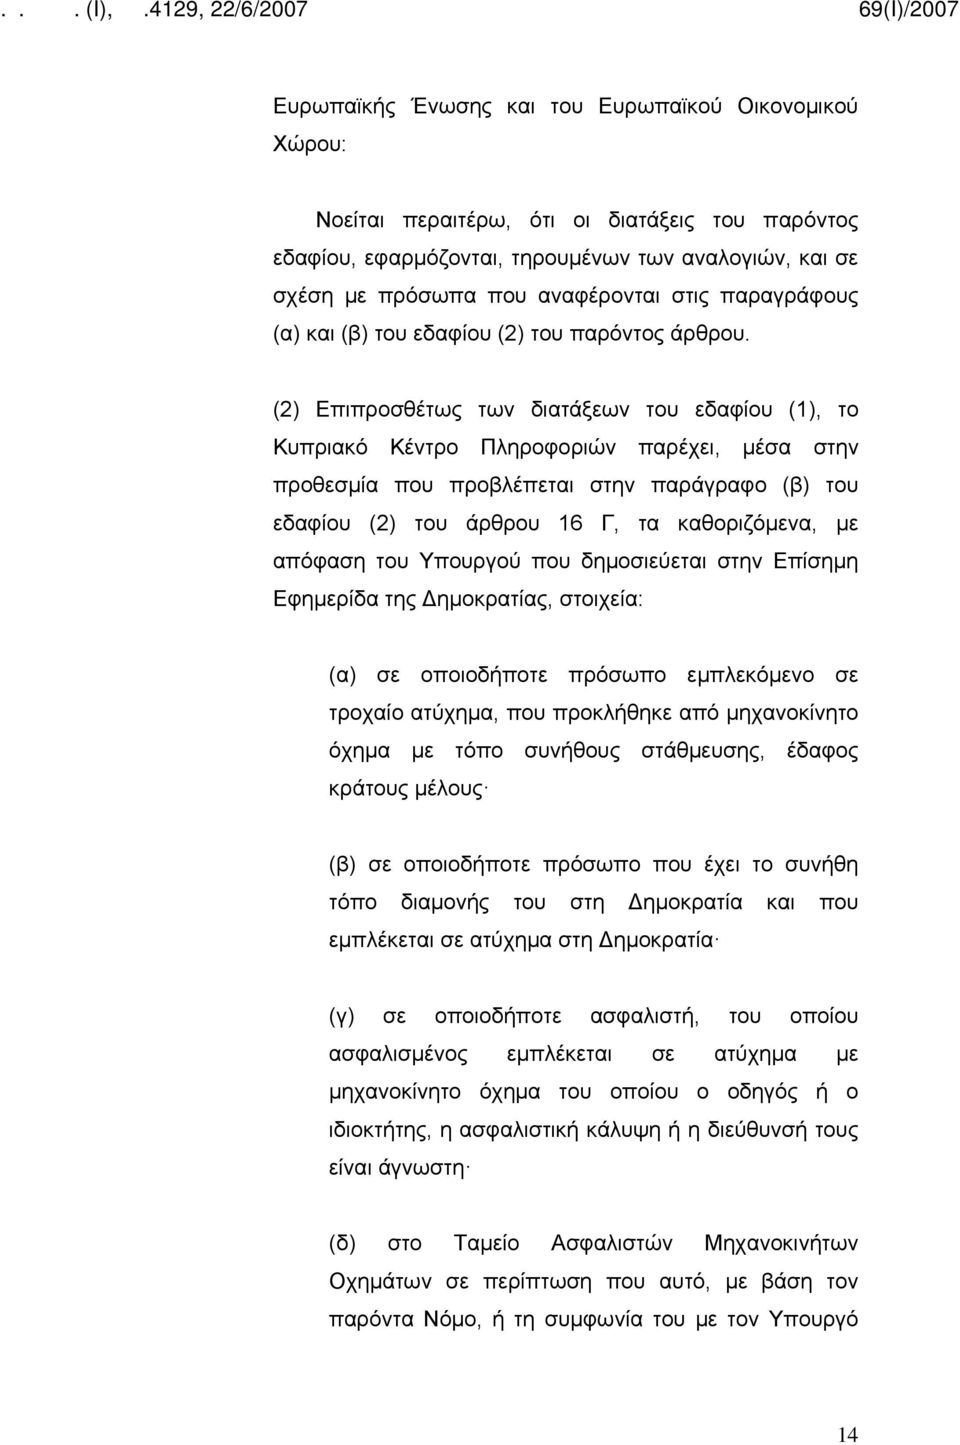 (2) Επιπροσθέτως των διατάξεων του εδαφίου (1), το Κυπριακό Κέντρο Πληροφοριών παρέχει, μέσα στην προθεσμία που προβλέπεται στην παράγραφο (β) του εδαφίου (2) του άρθρου 16 Γ, τα καθοριζόμενα, με